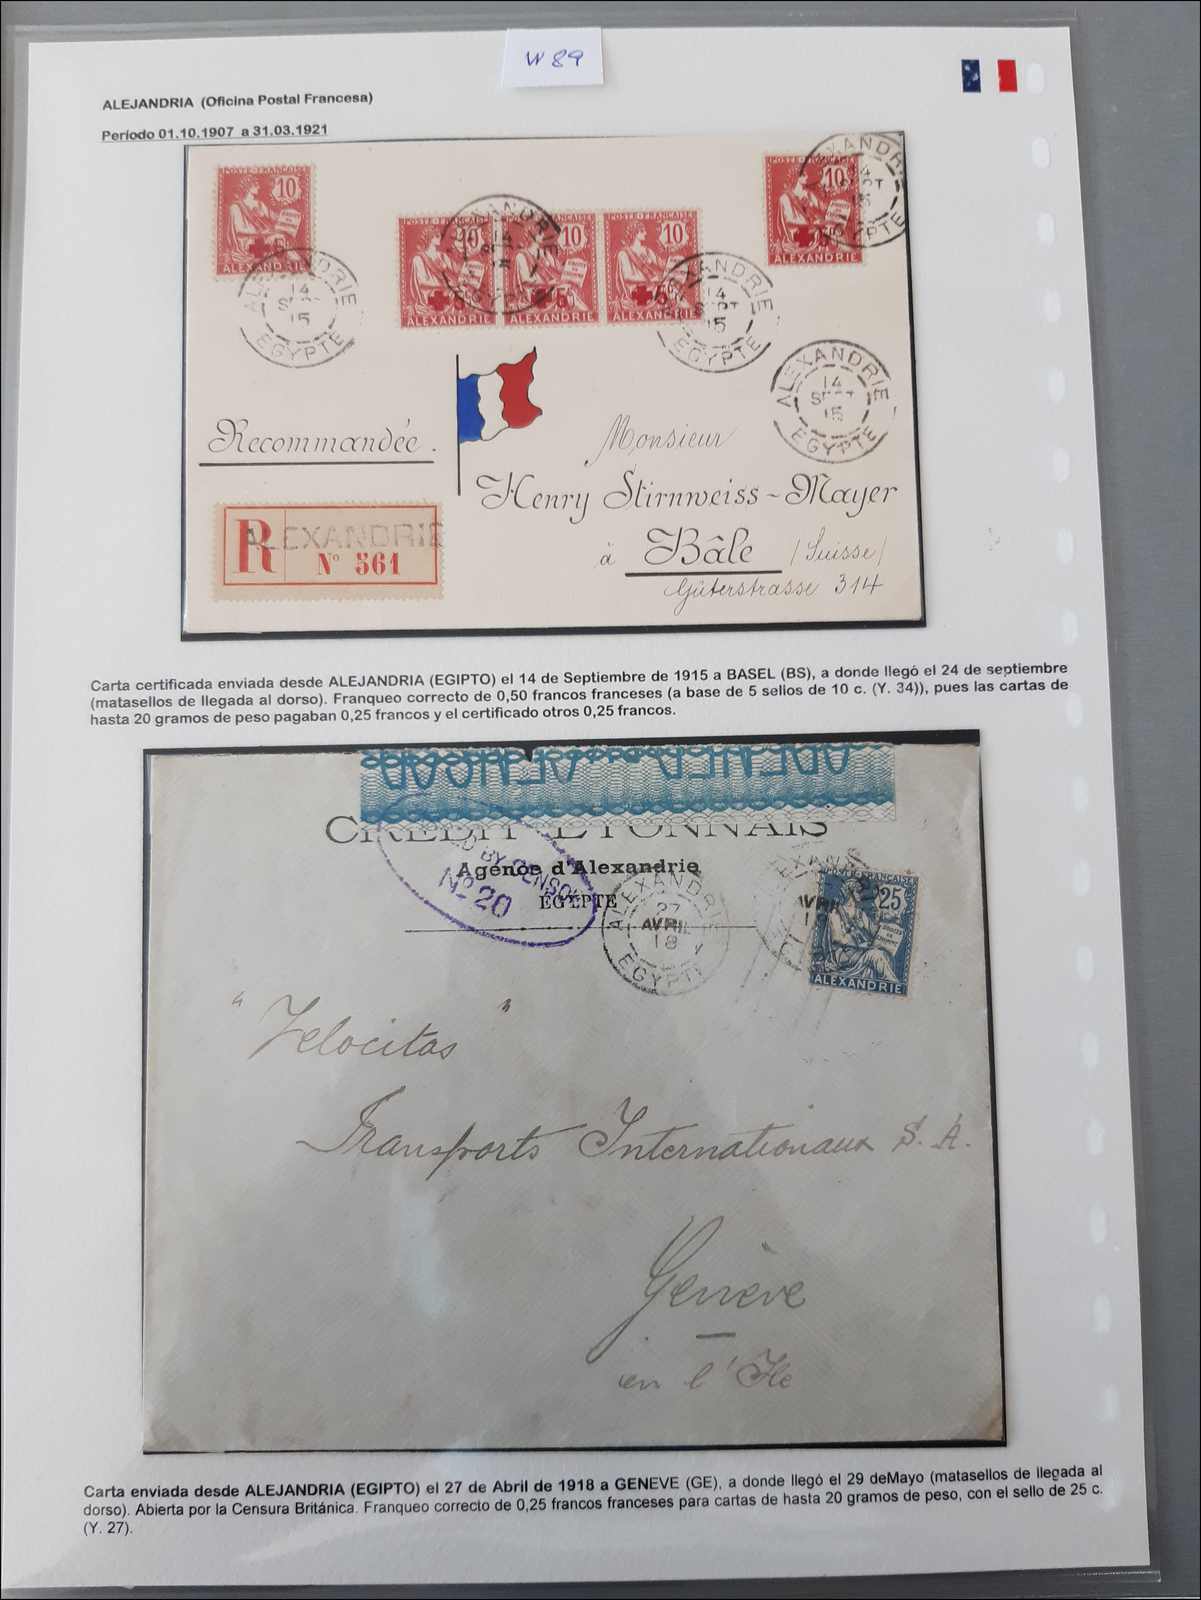 Lot 669 - andere gebiete Ägypten Französsische Postämter -  Rolli Auctions Auction #68 Day 1